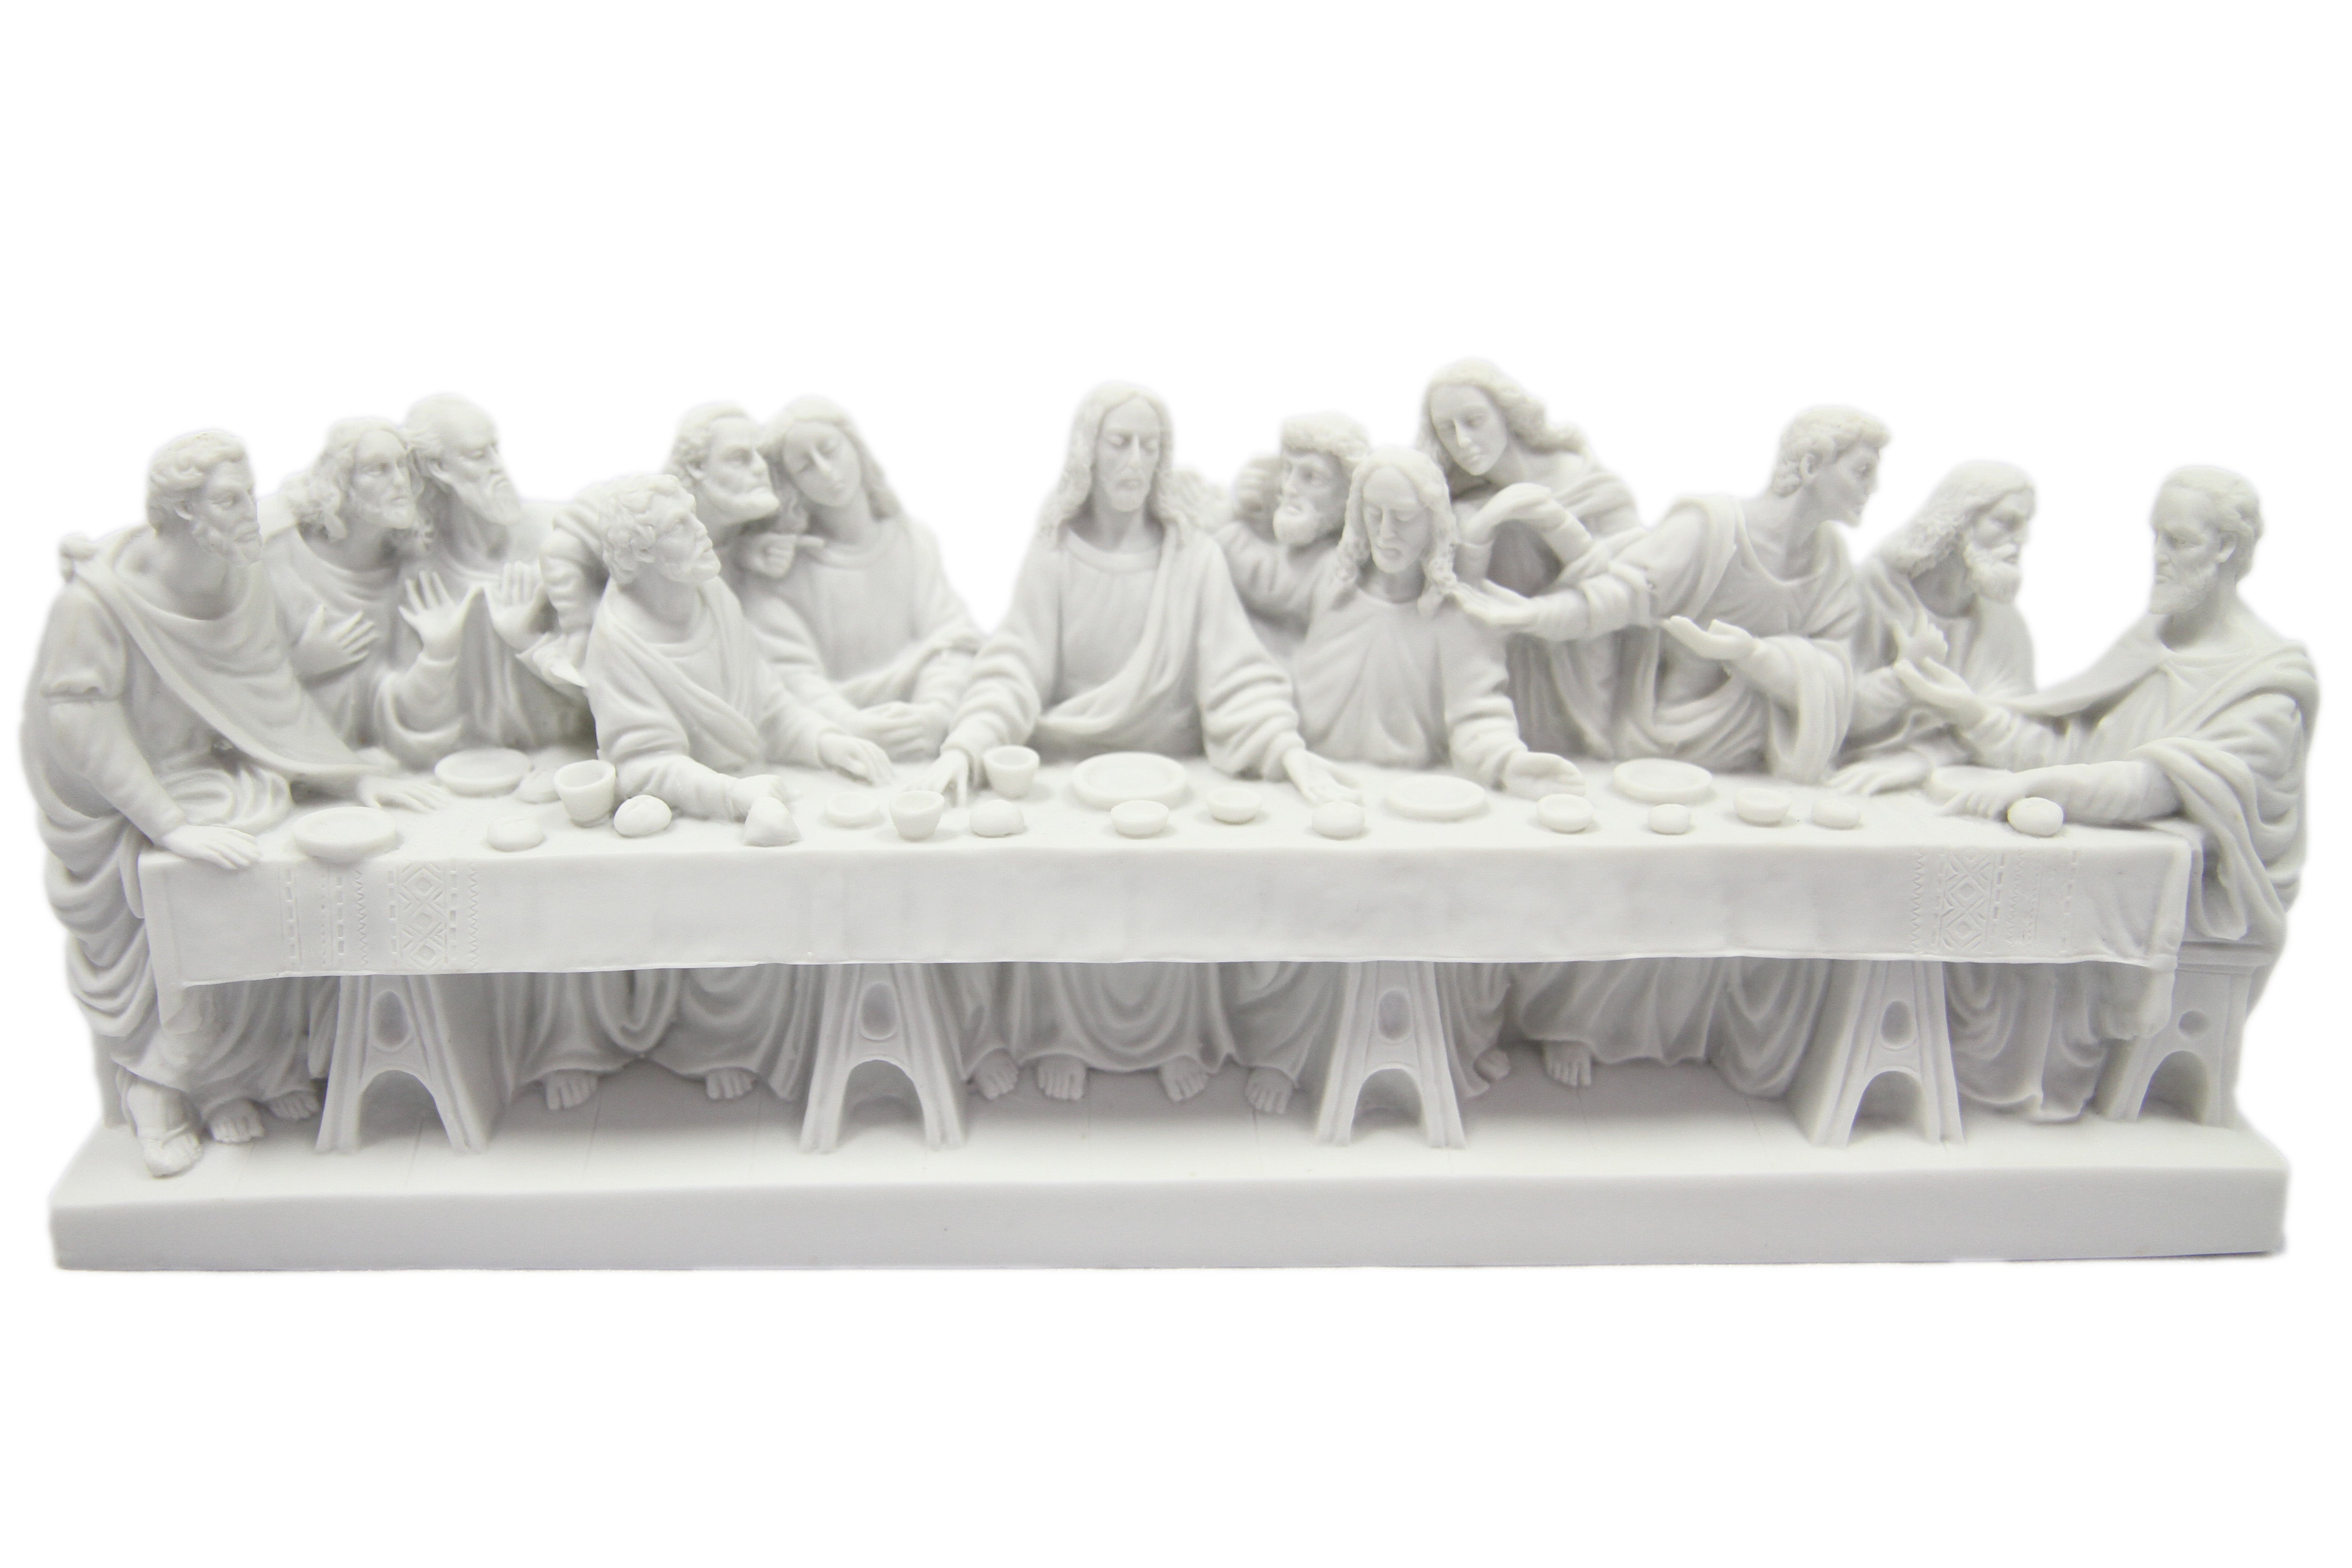 12" The Last Supper Statue Catholic Religious Sculpture Vittoria Collection